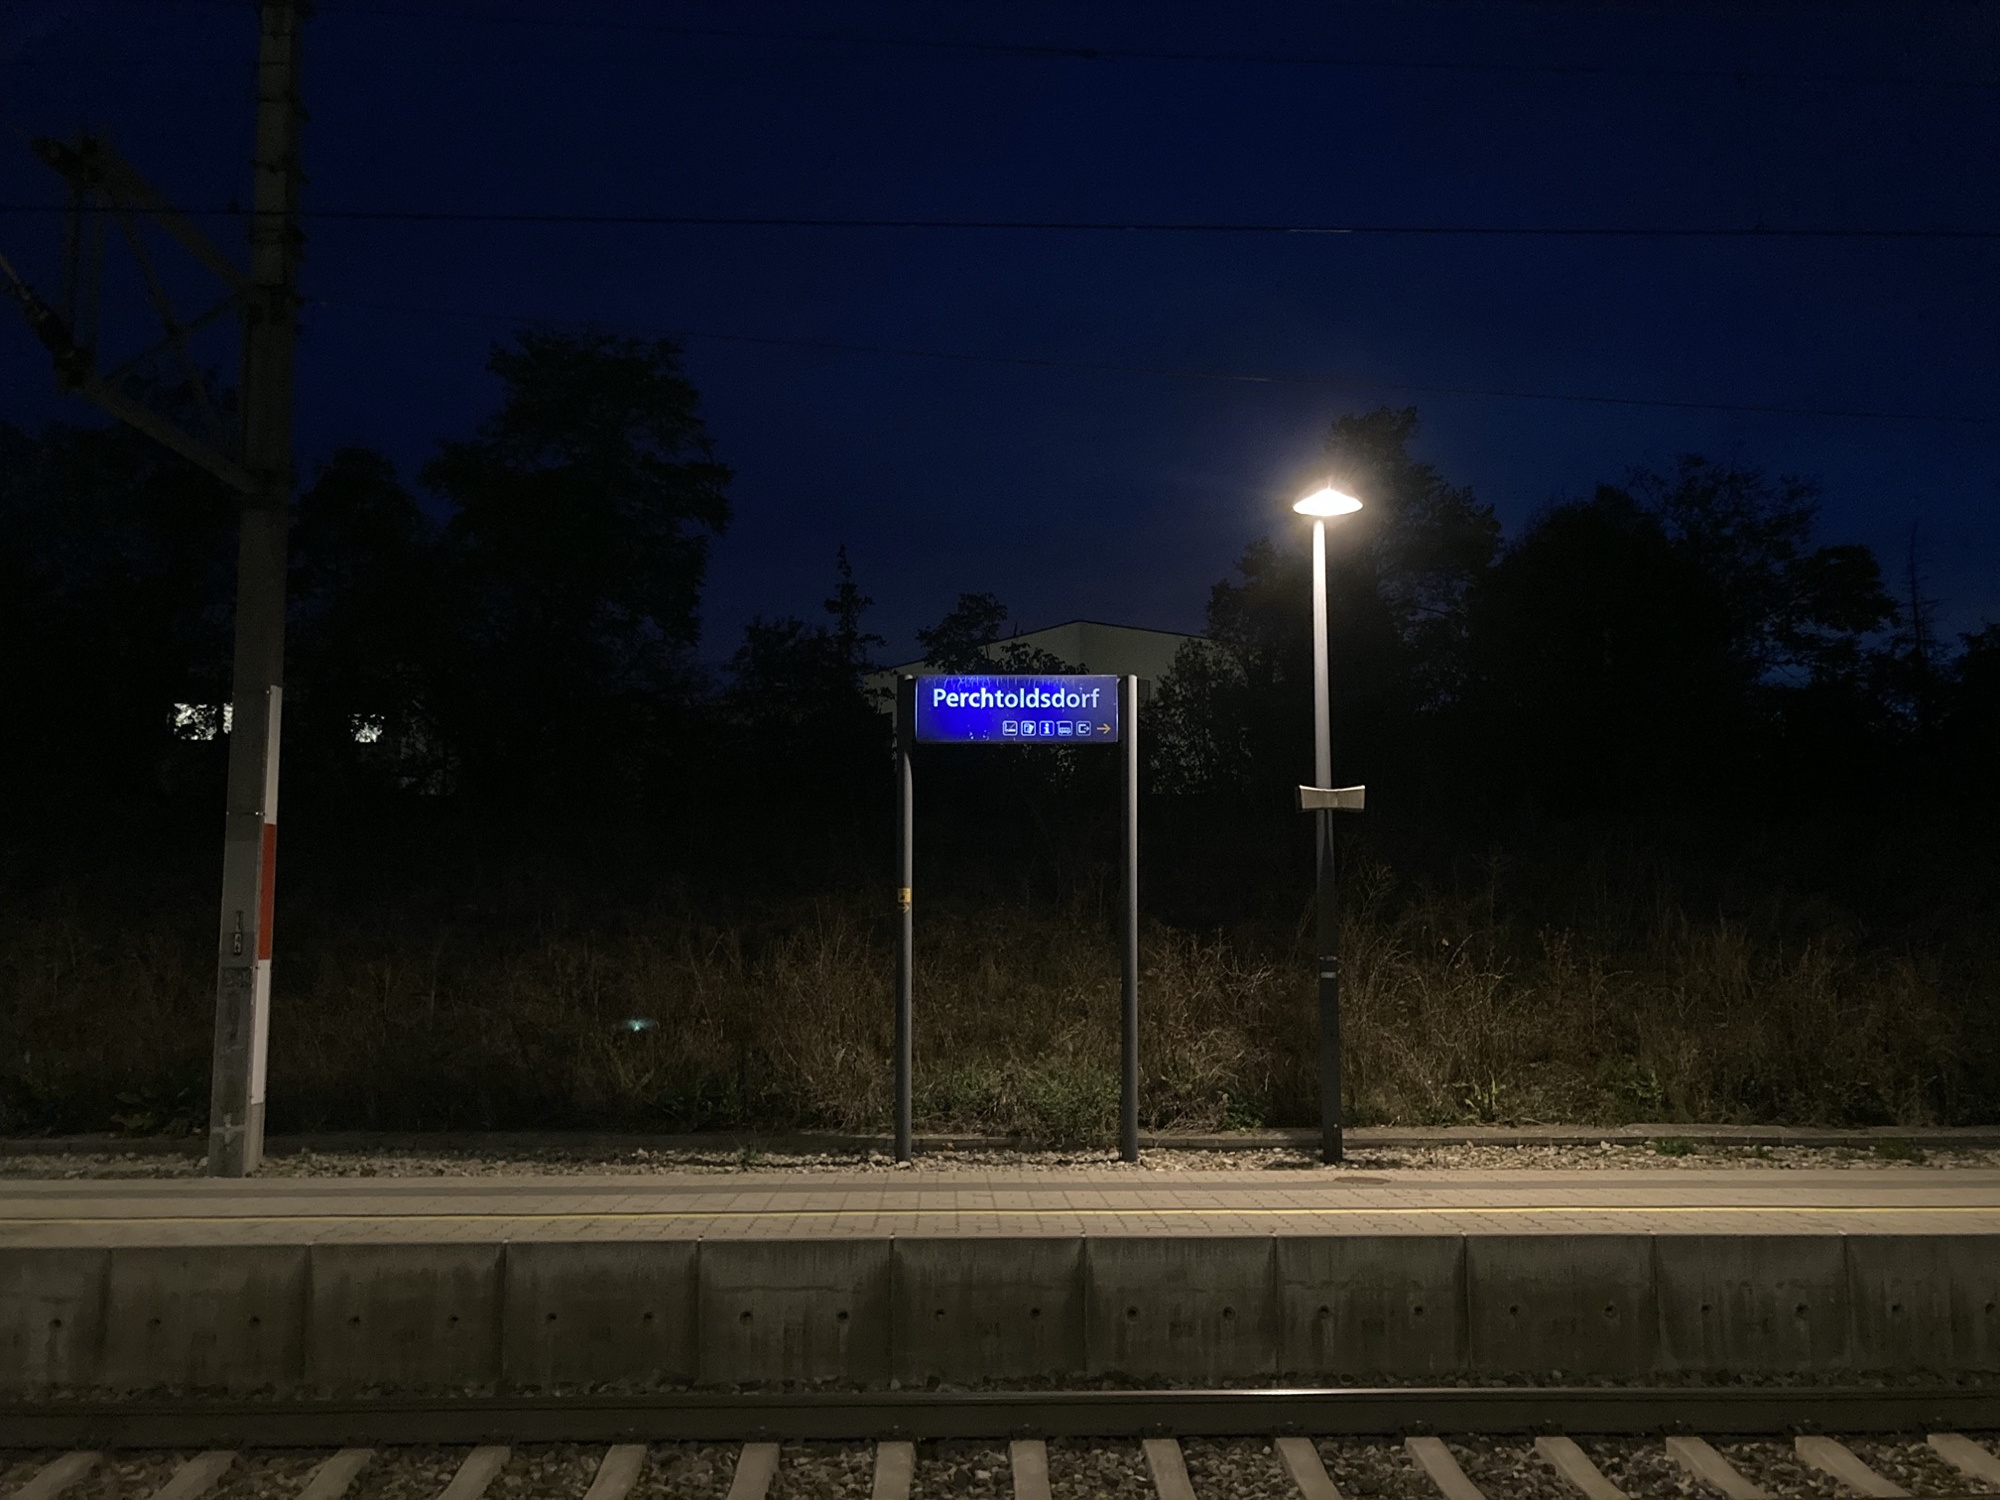 Abend am Bahnhof Perchtoldsdorf, Schild auf dem Bahnsteig beleuchtet von einer einsamen Laterne